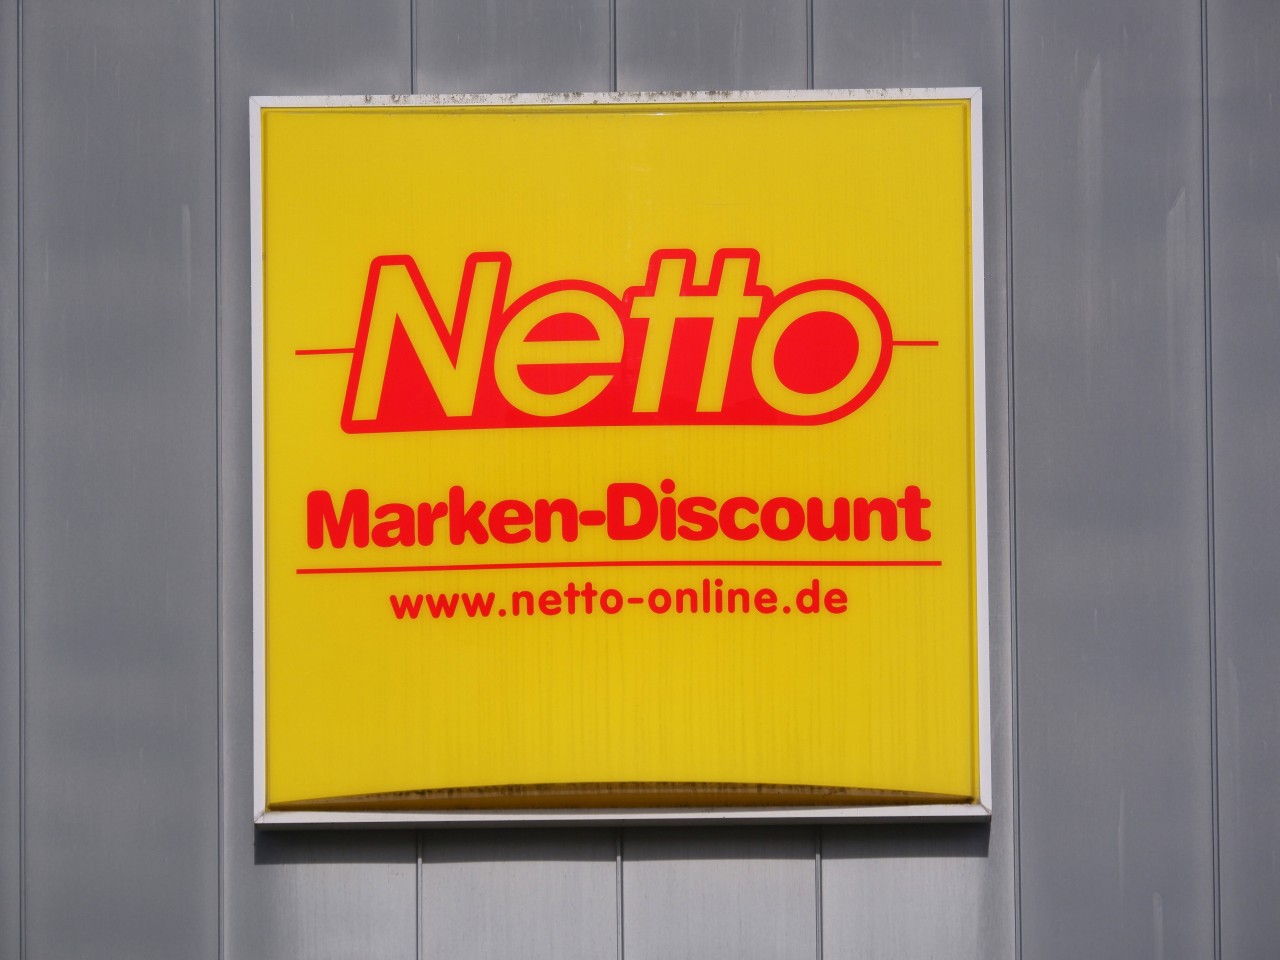 Netto hat für seine Kunden ein besonderes Angebot in Petto. (Symbolbild)